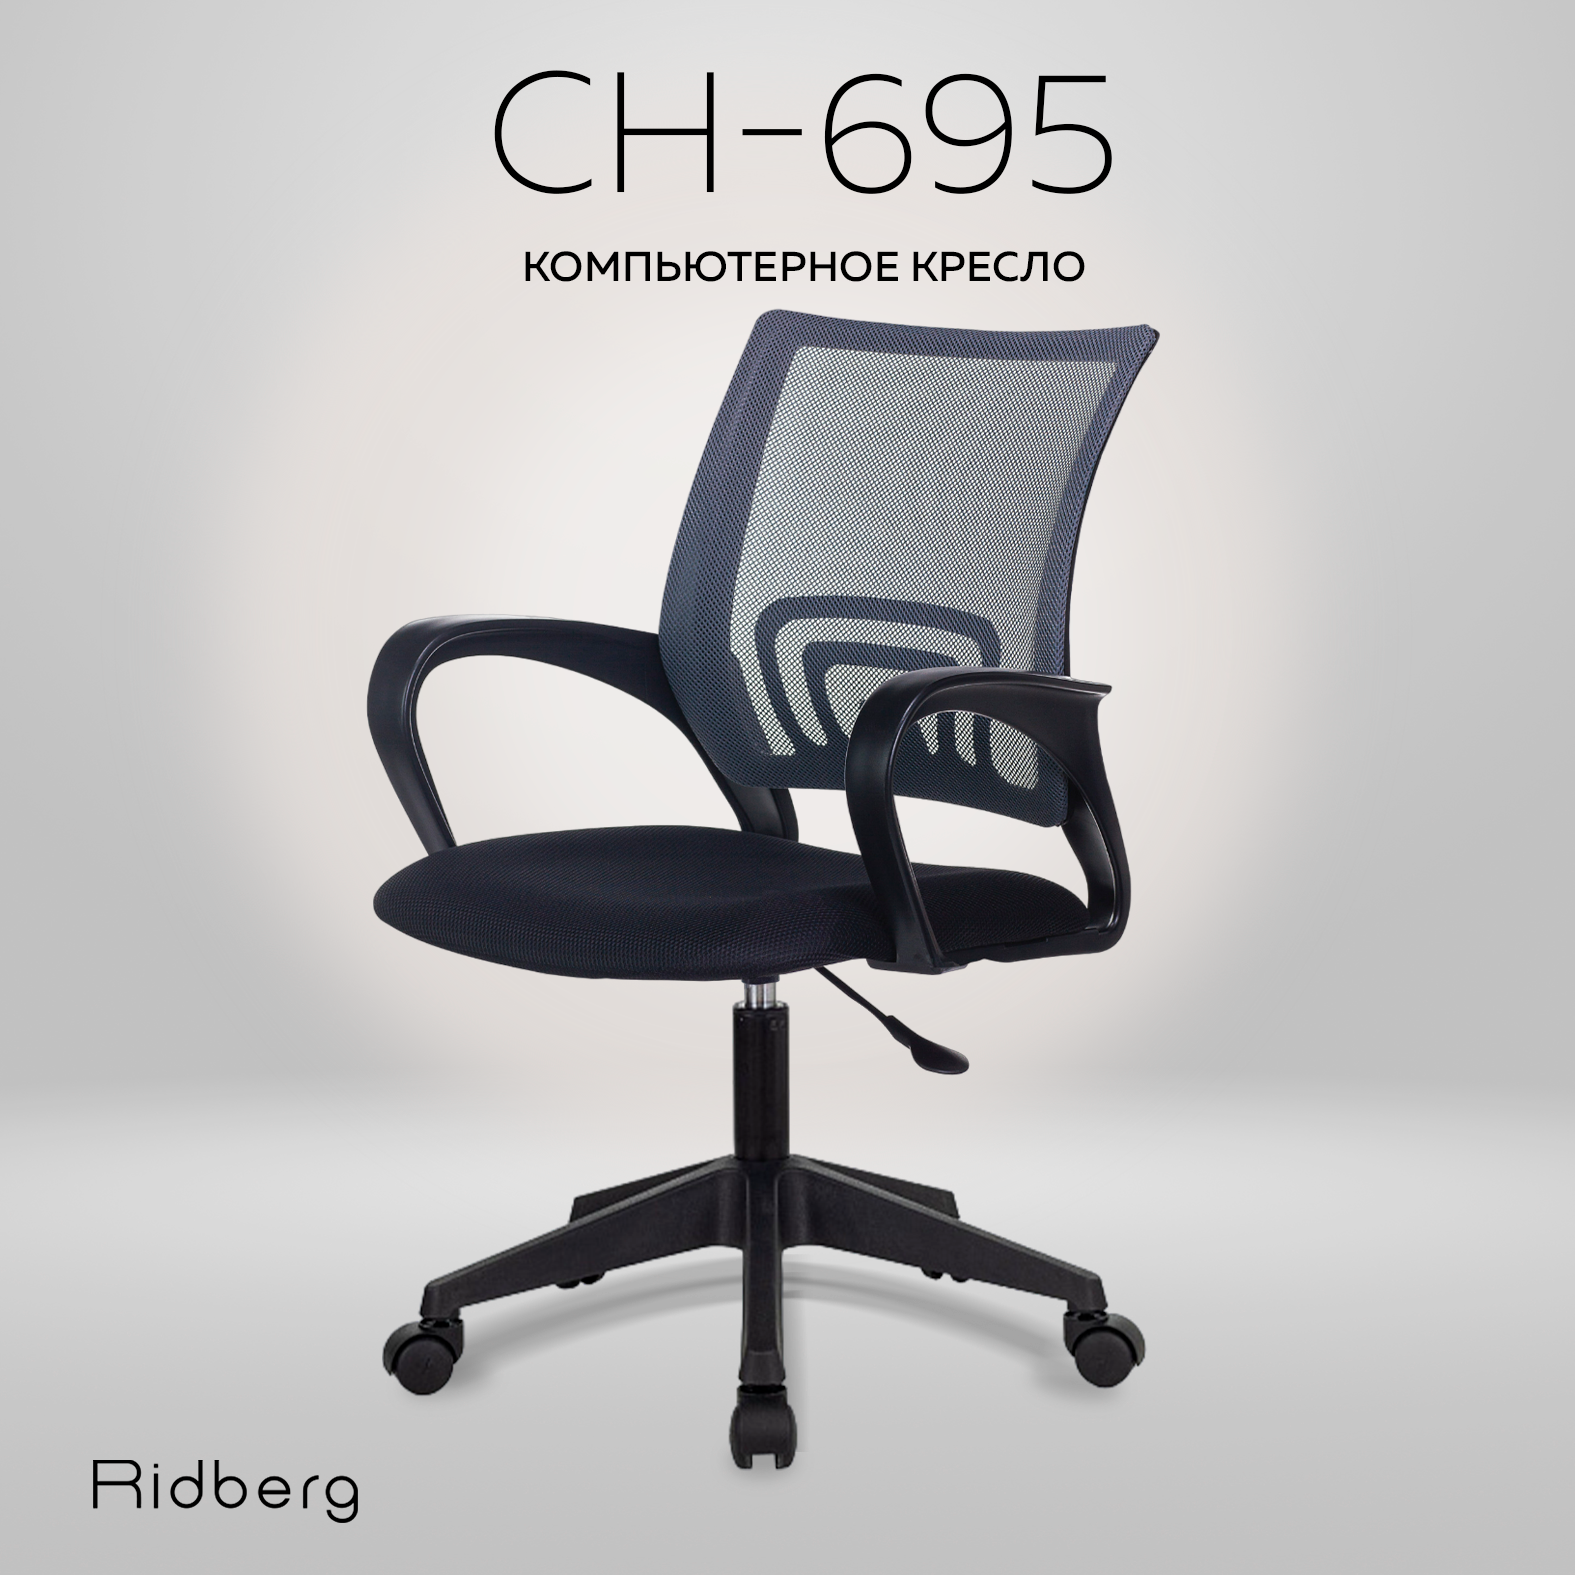 Компьютерное офисное кресло RIDBERG CH-695 черно-серый / Детское кресло с подлокотниками на колесах / Стул компьютерный для руководителя